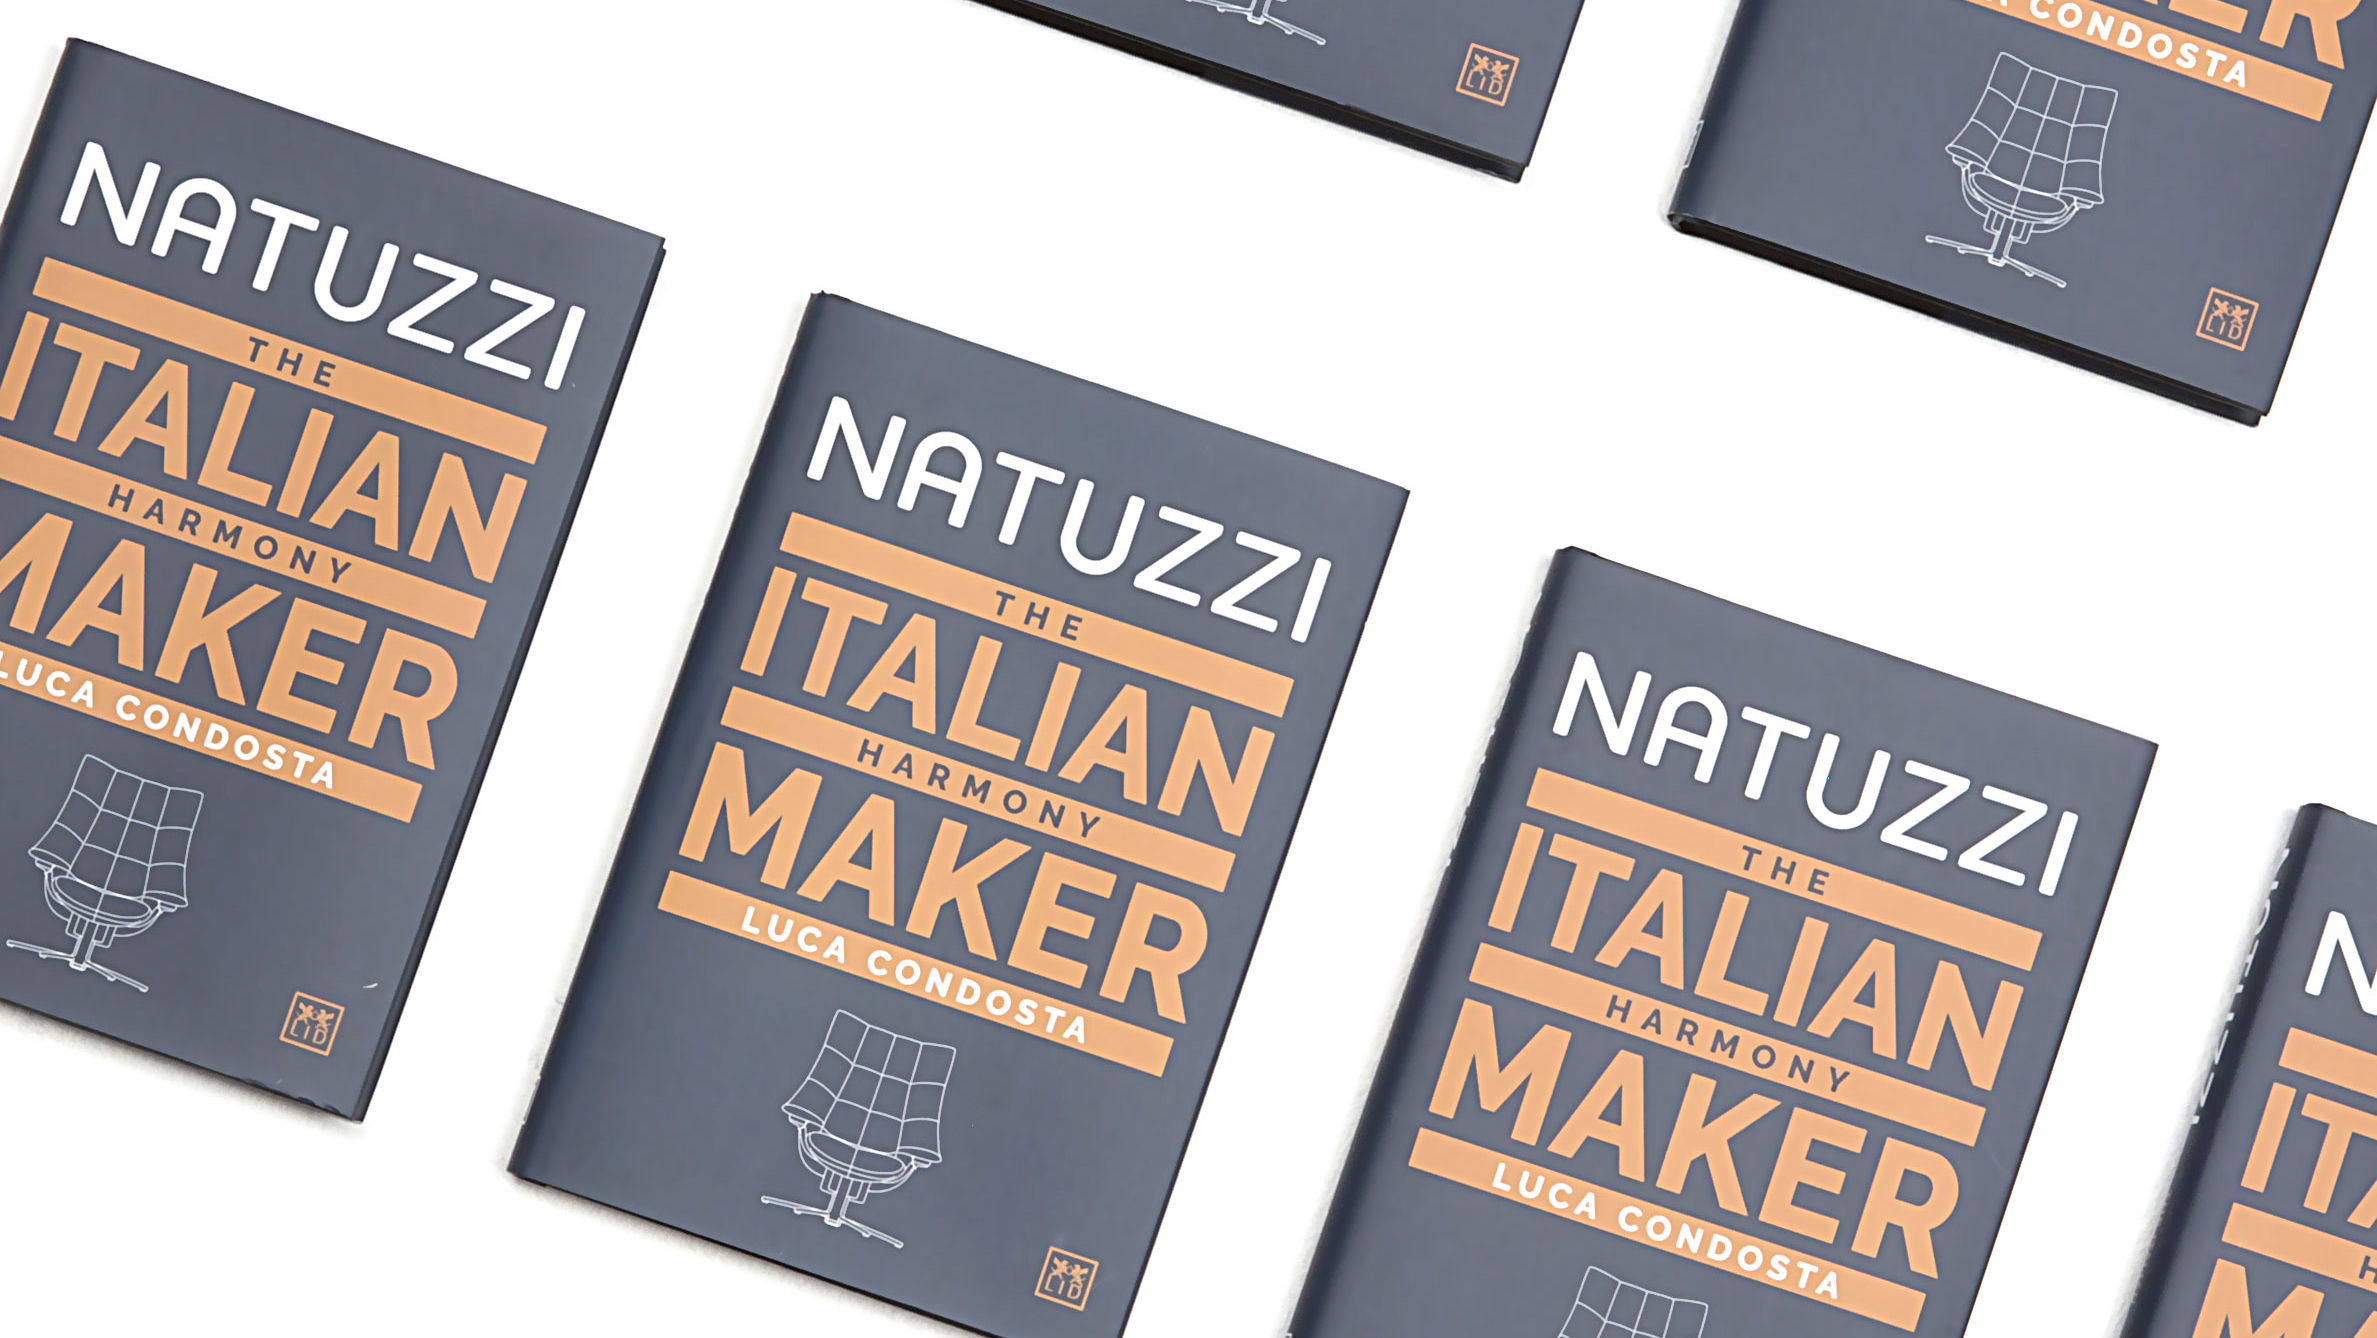  “Natuzzi The Italian Harmony Maker”  1